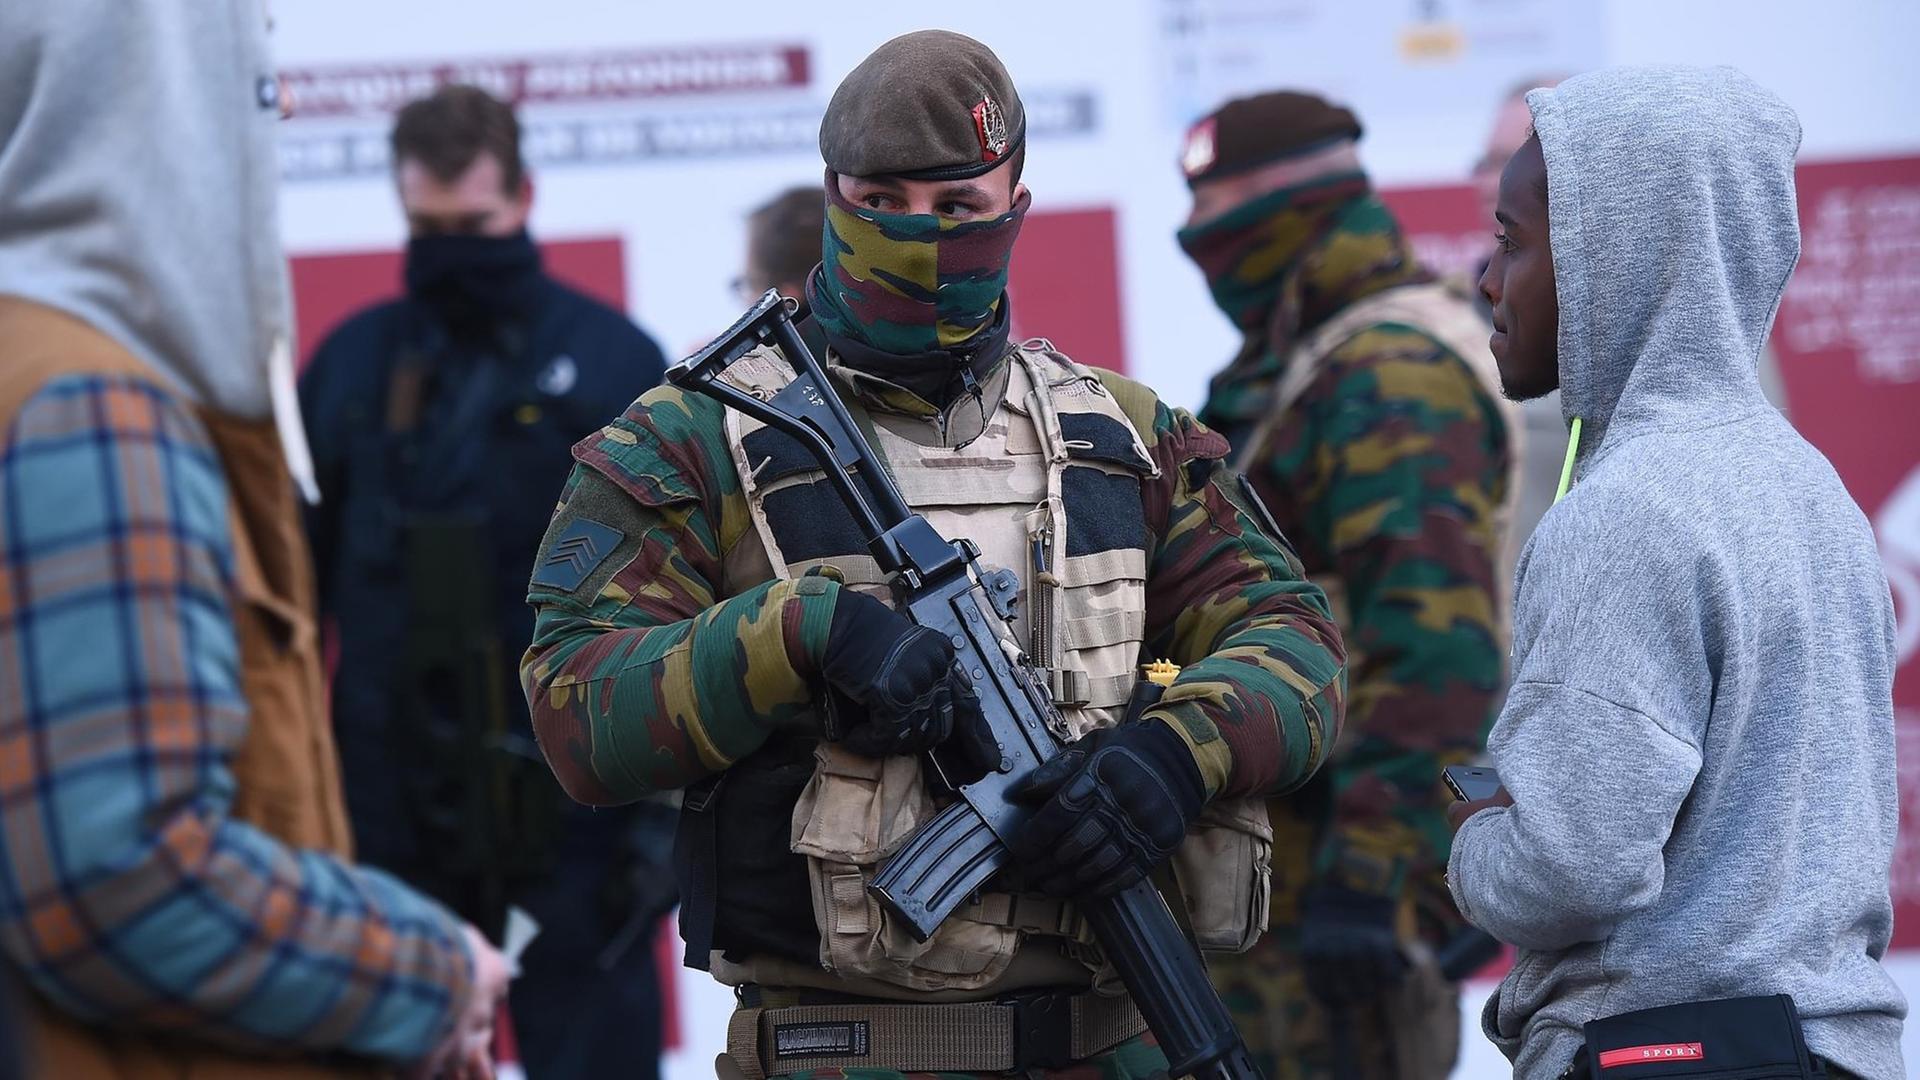 Militär patrouilliert in Belgiens Hauptstadt Brüssel.